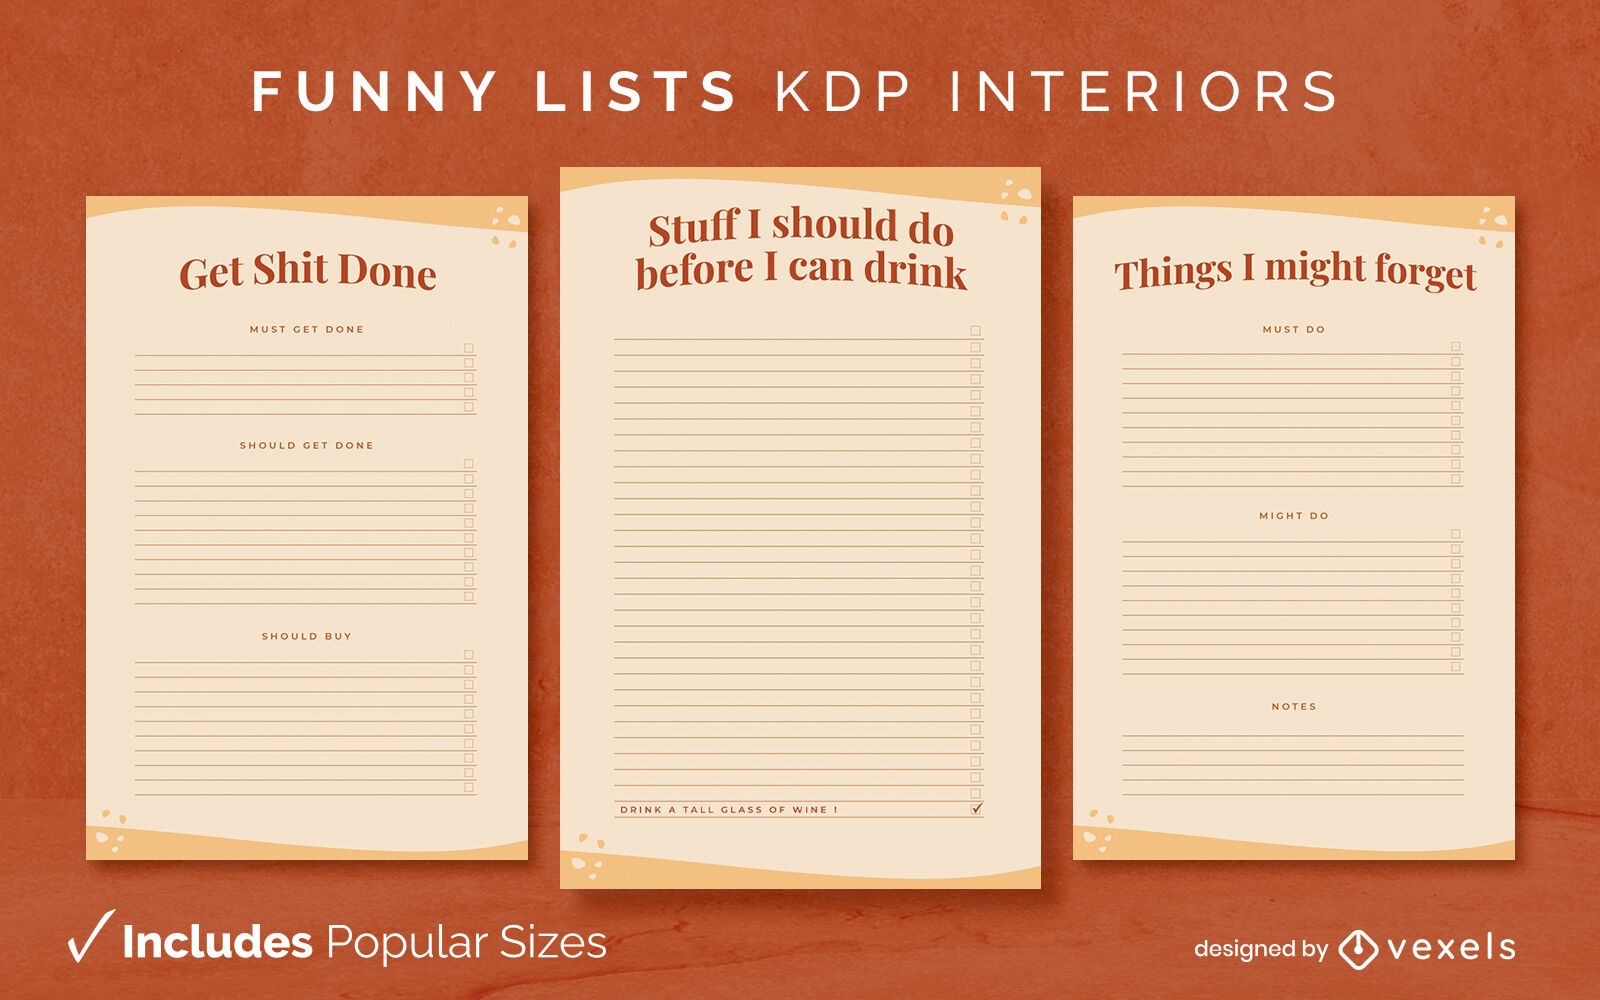 Divertido hacer listas diseño de páginas interiores kdp